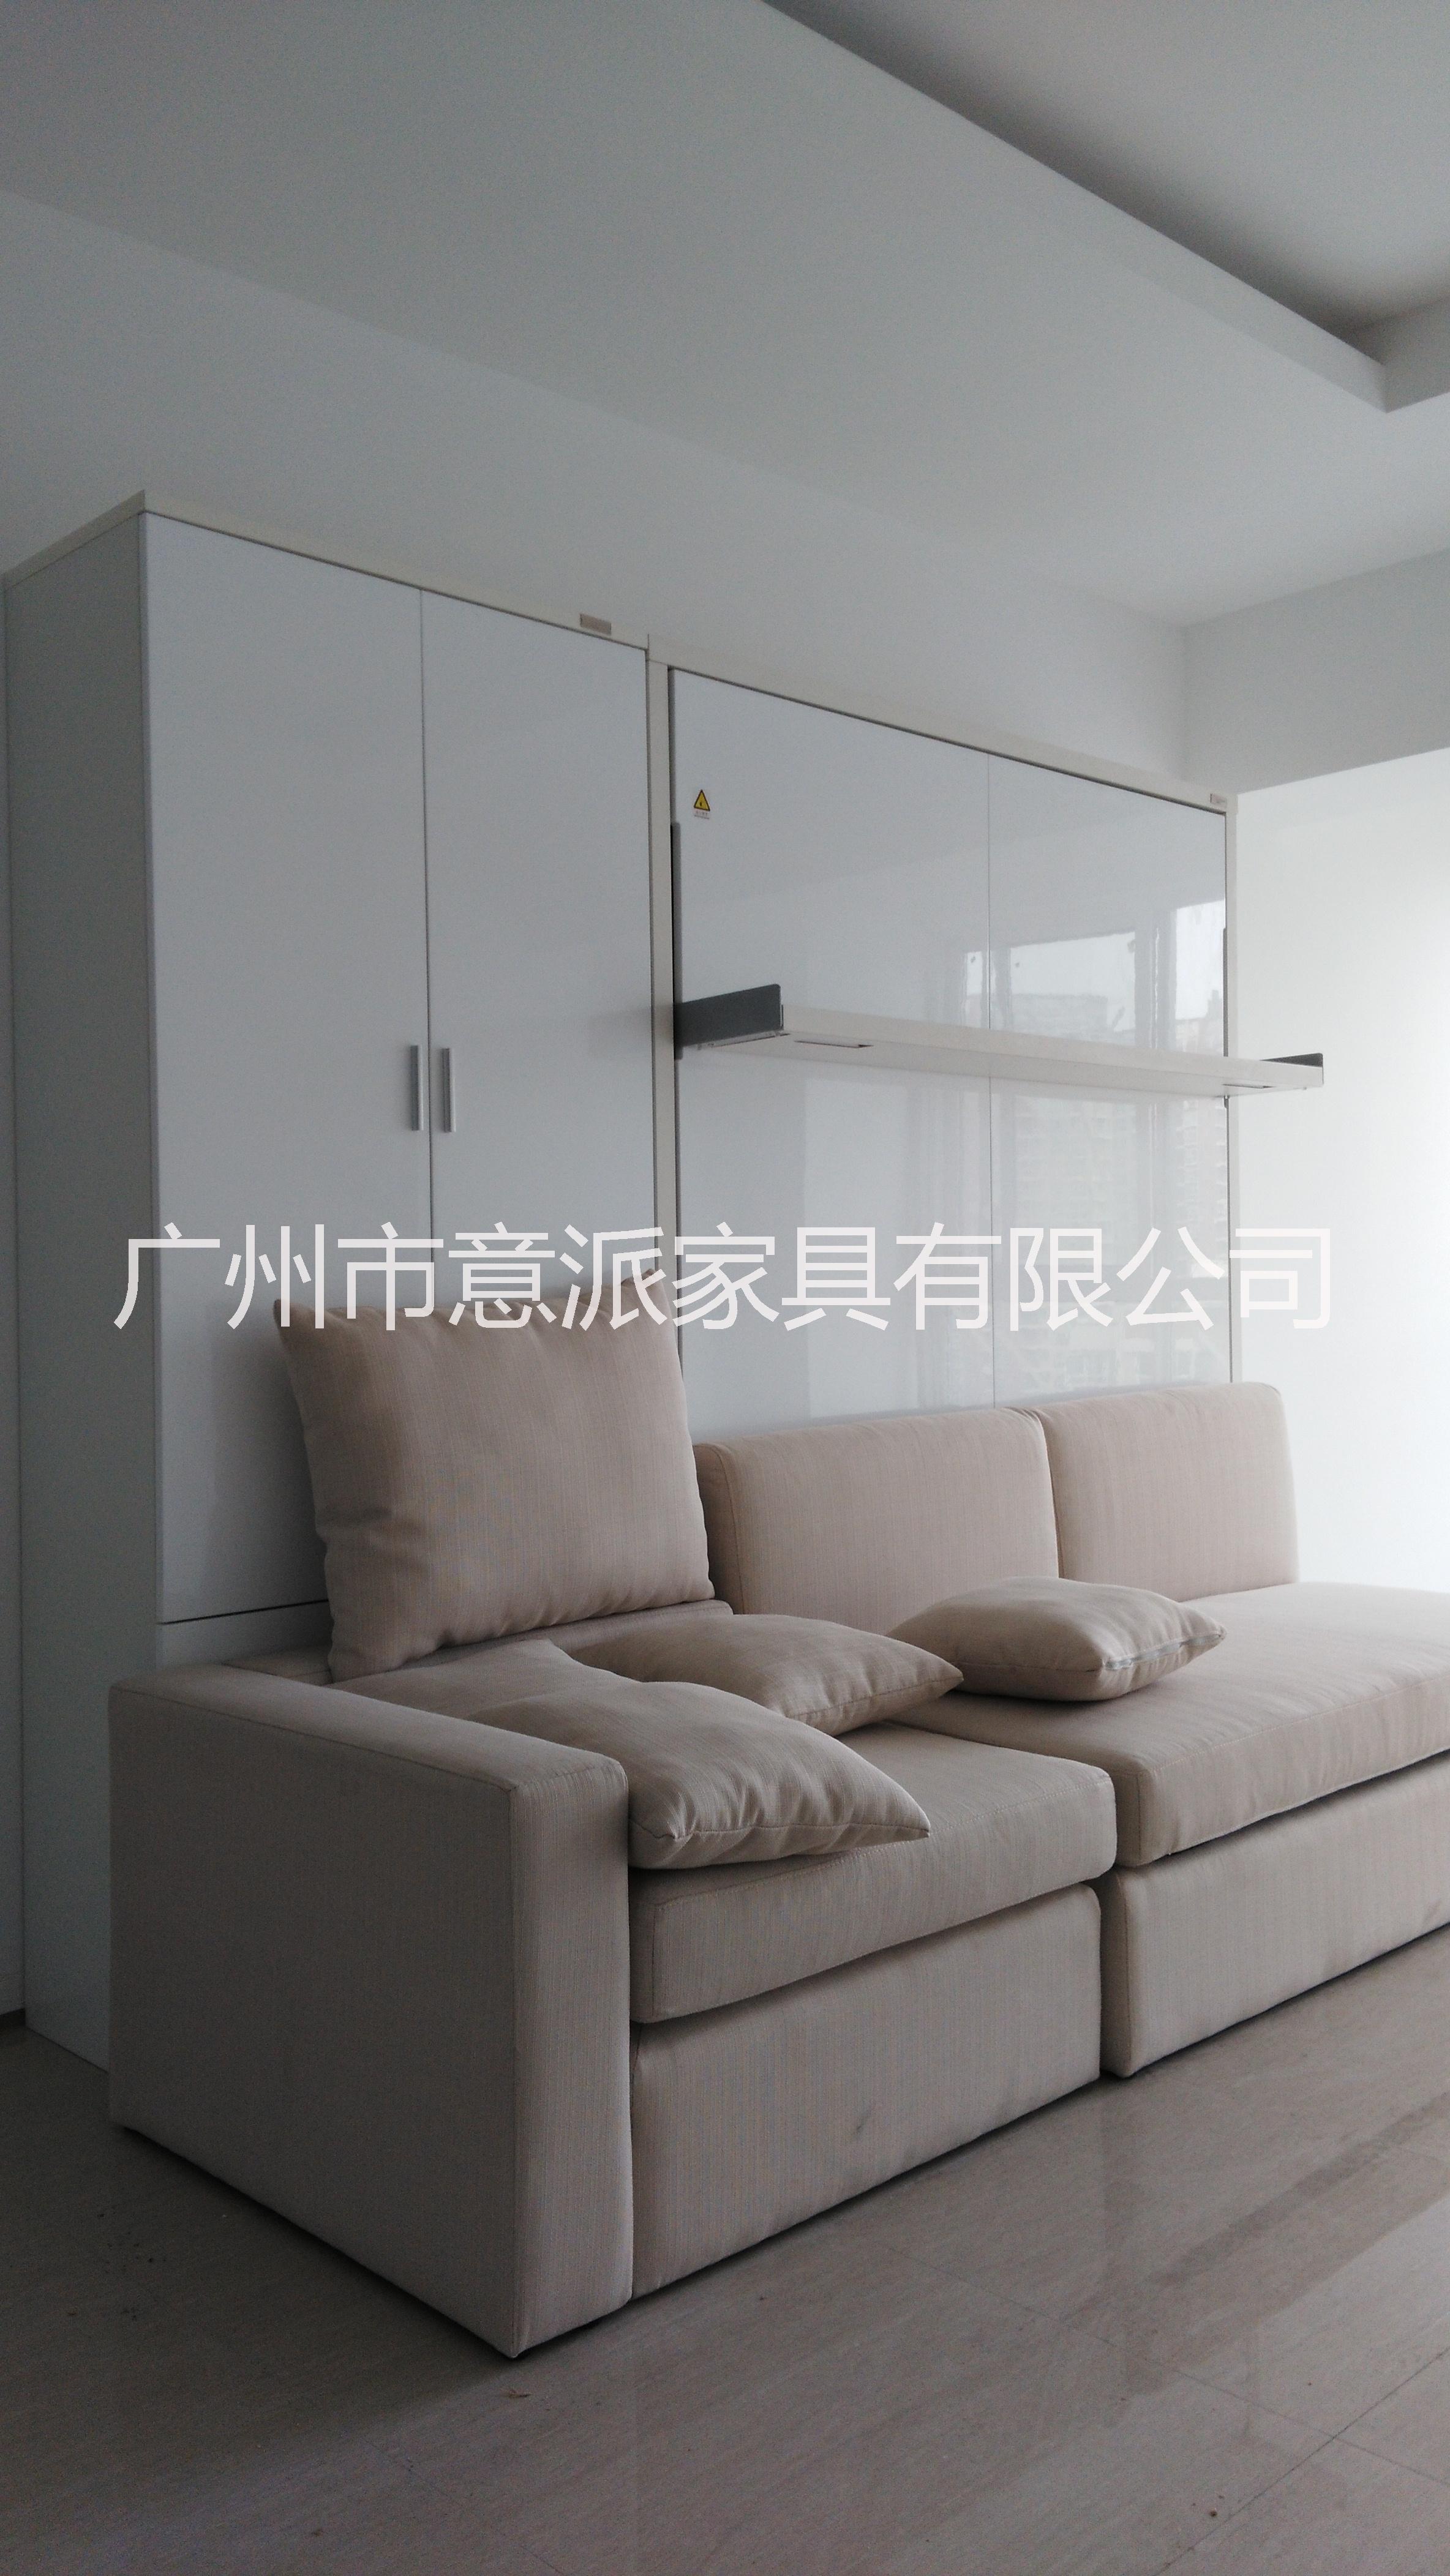 广州市厂家直供翻床、隐形床、功能性沙发厂家厂家直供翻床、隐形床、功能性沙发